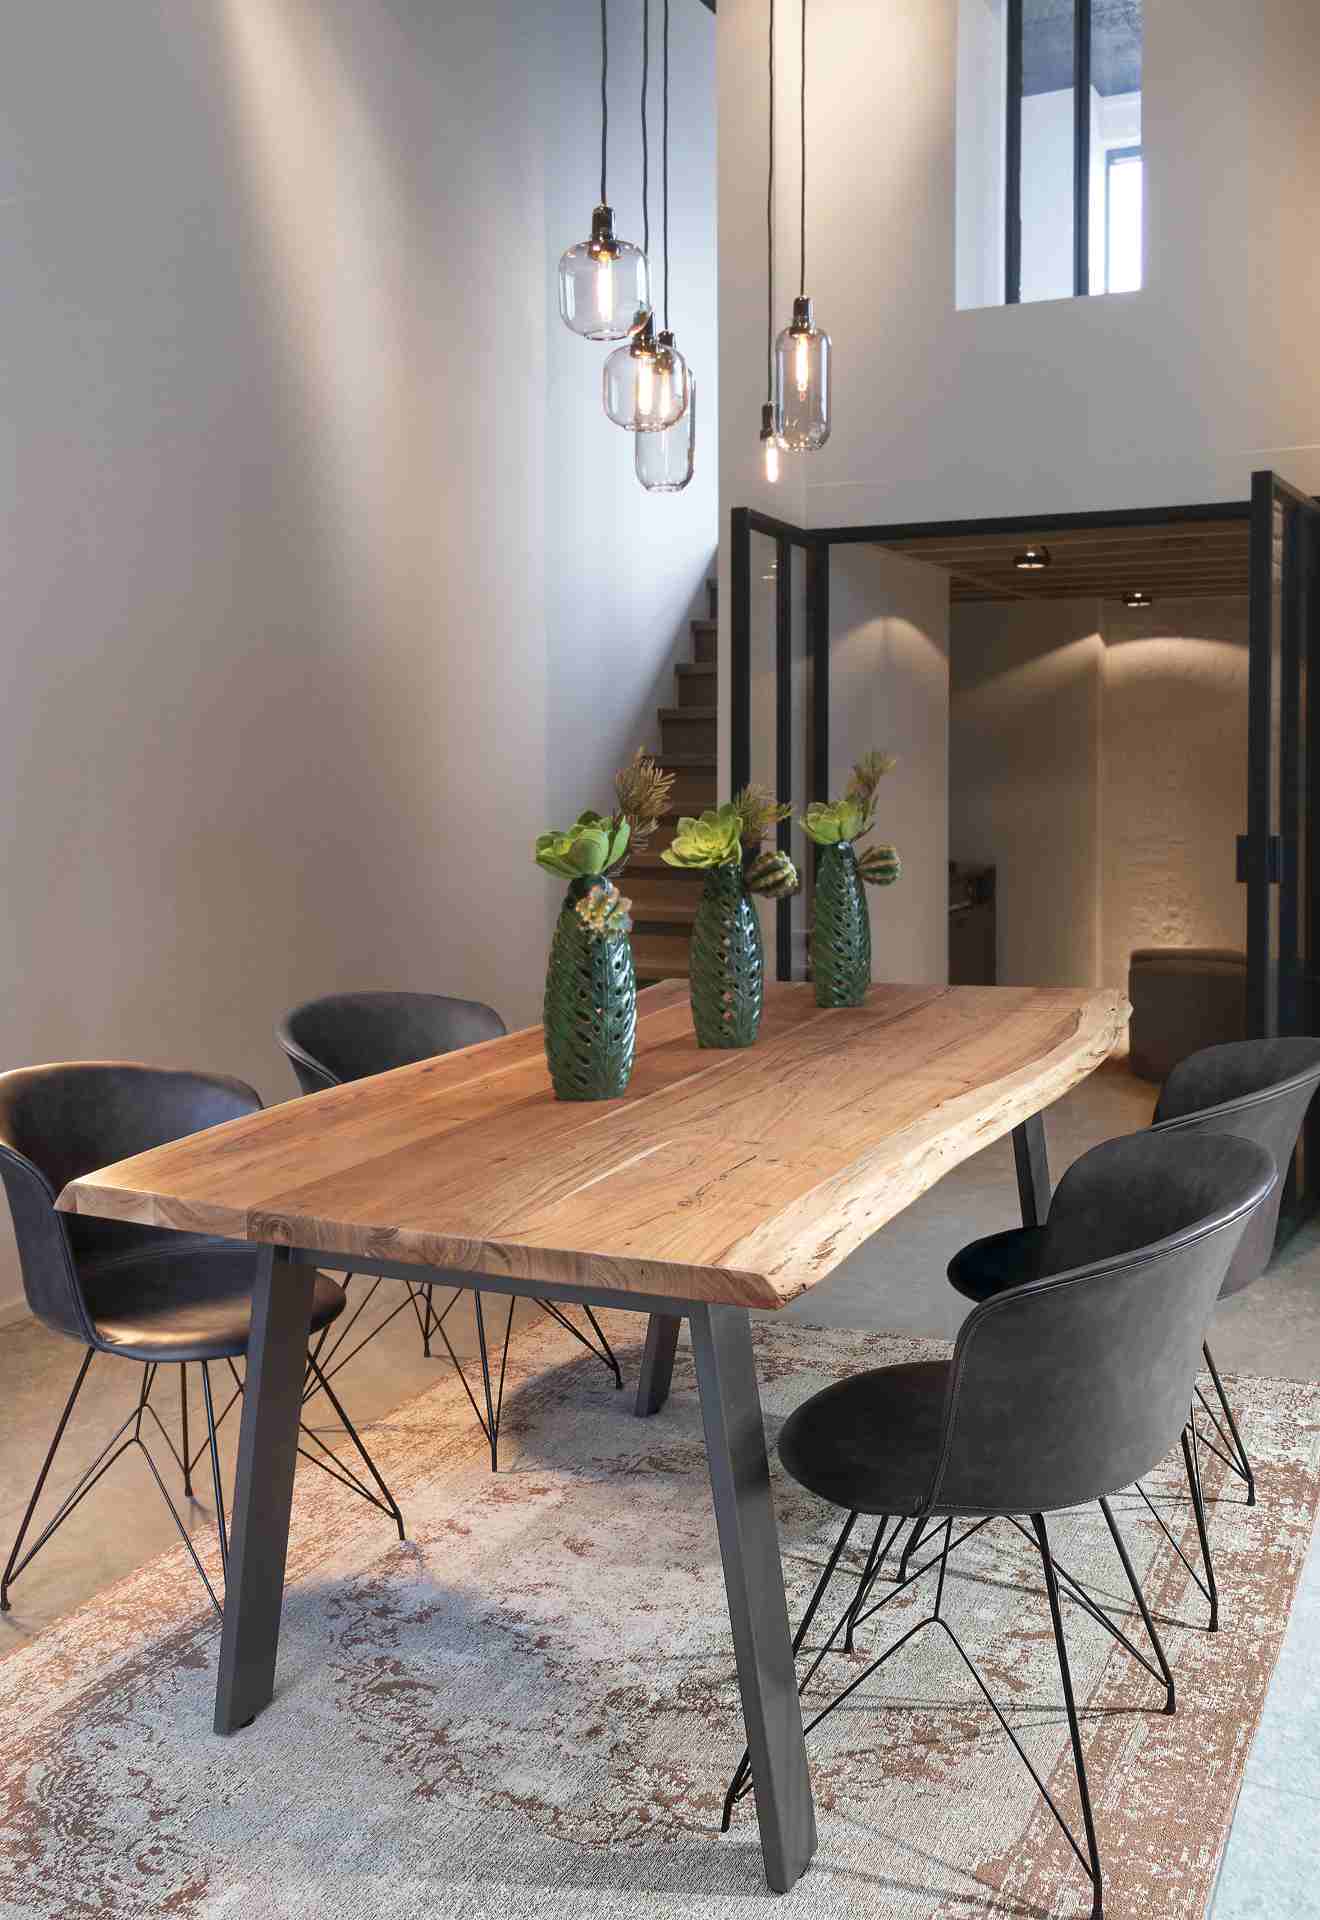 Der Esstisch Aron überzeugt mit seinem moderndem Design gefertigt wurde er aus Akazienholz, welches einen natürlichen Farbton besitzt. Das Gestell des Tisches ist aus Metall und ist Schwarz. Der Tisch besitzt eine Breite von 160 cm.